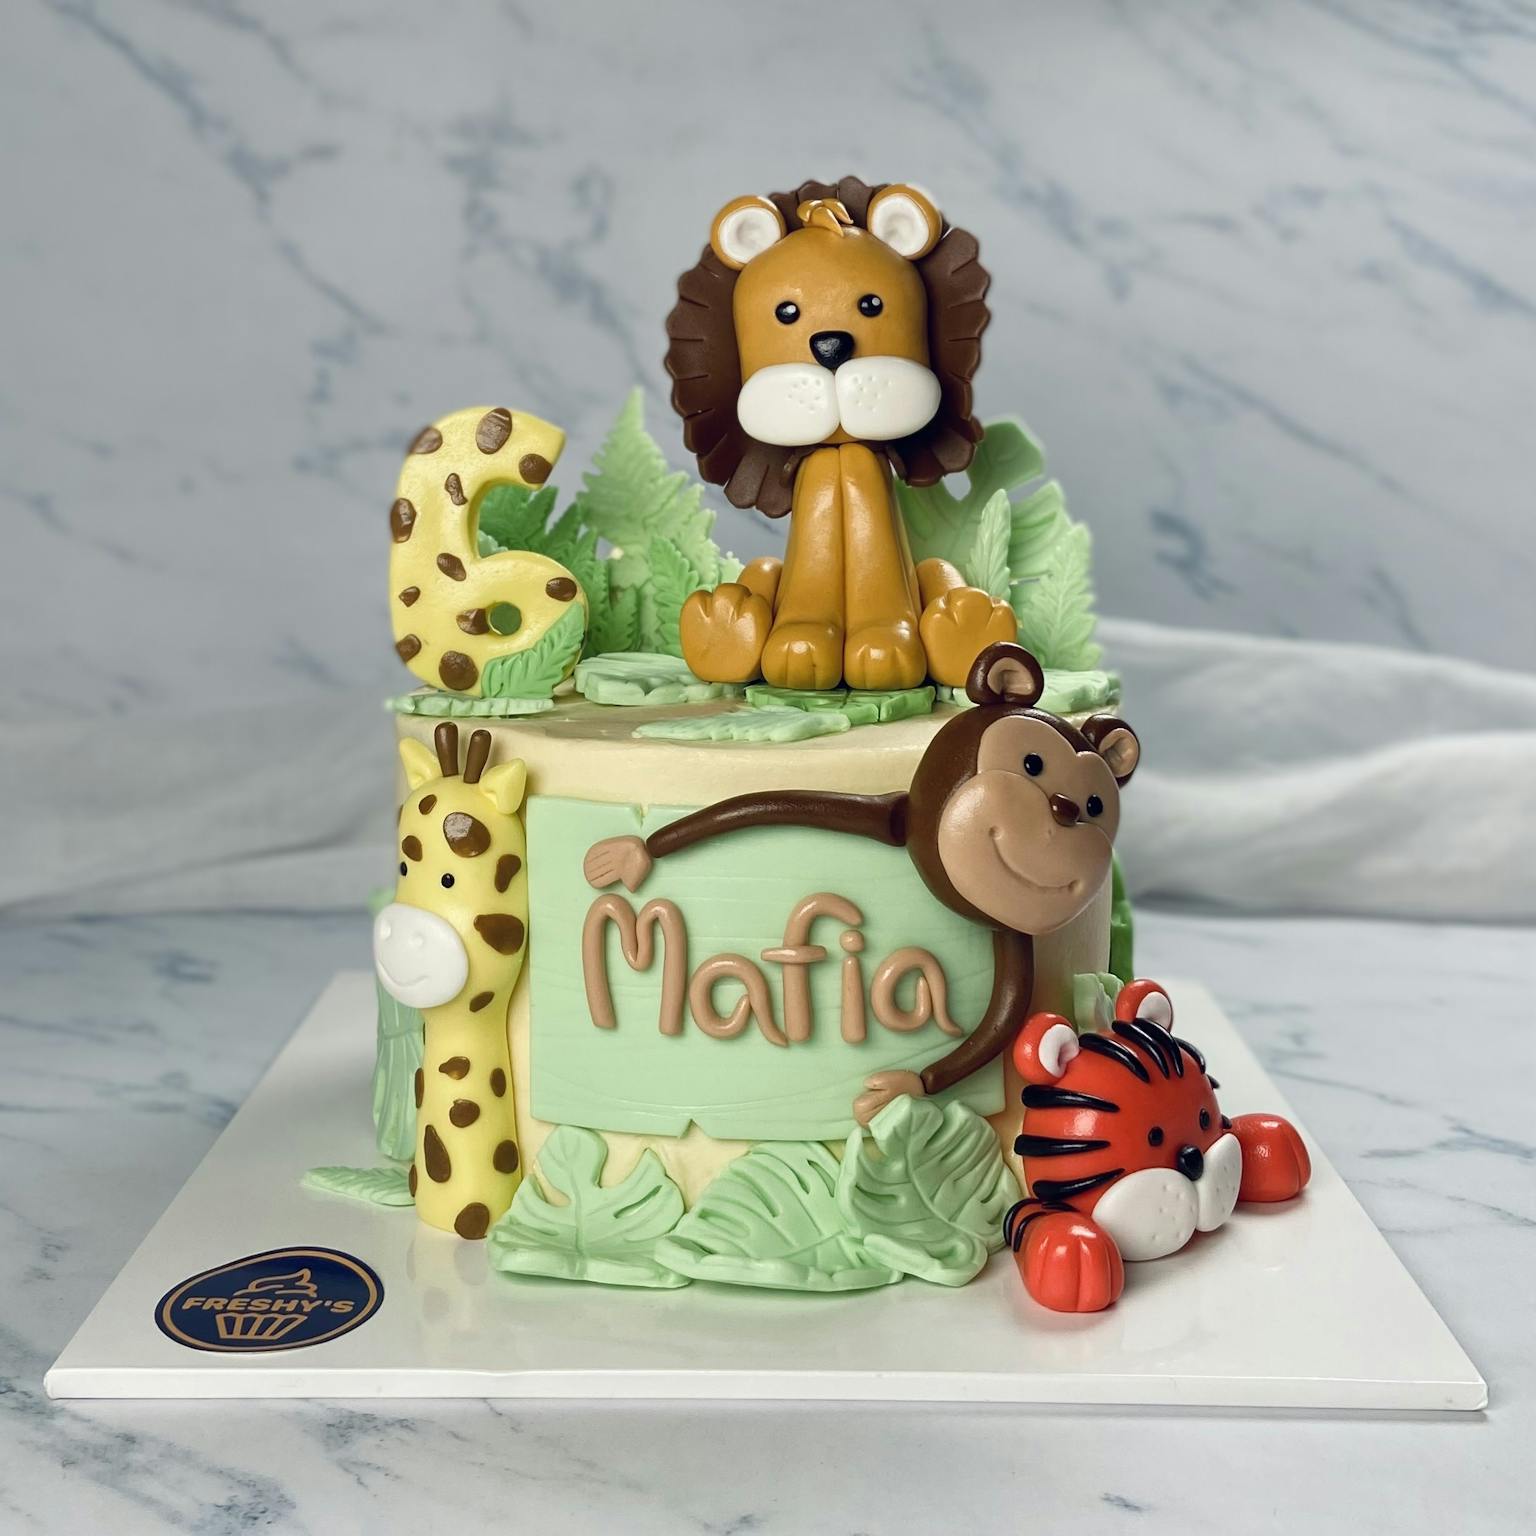 100% edible fondant sculpted safari themed cake